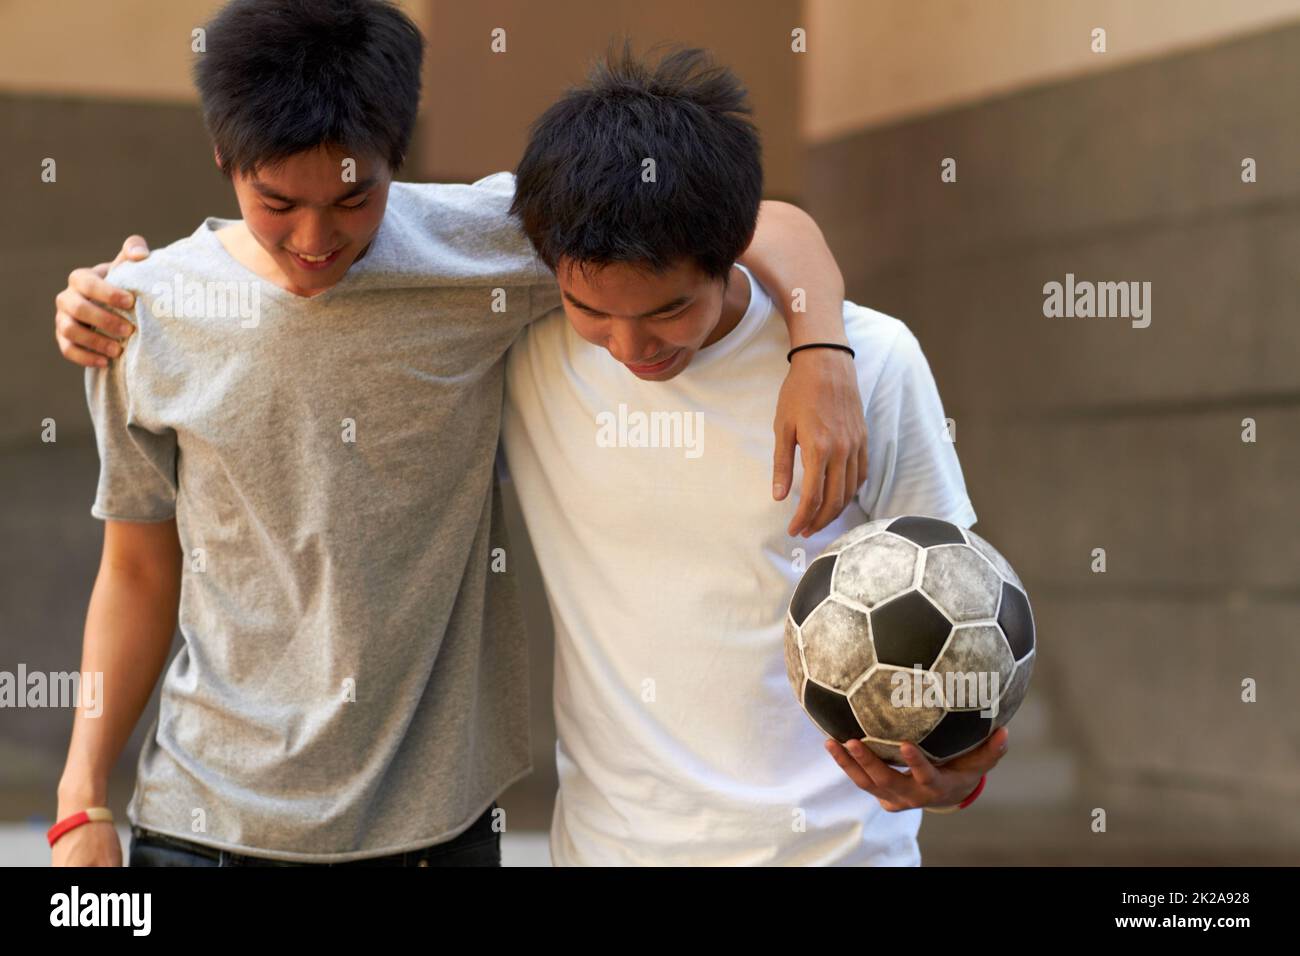 Gutes Spiel. Zwei asiatische Jungen, die mit ihren Armen umeinander gehen und einen Fußball halten. Stockfoto